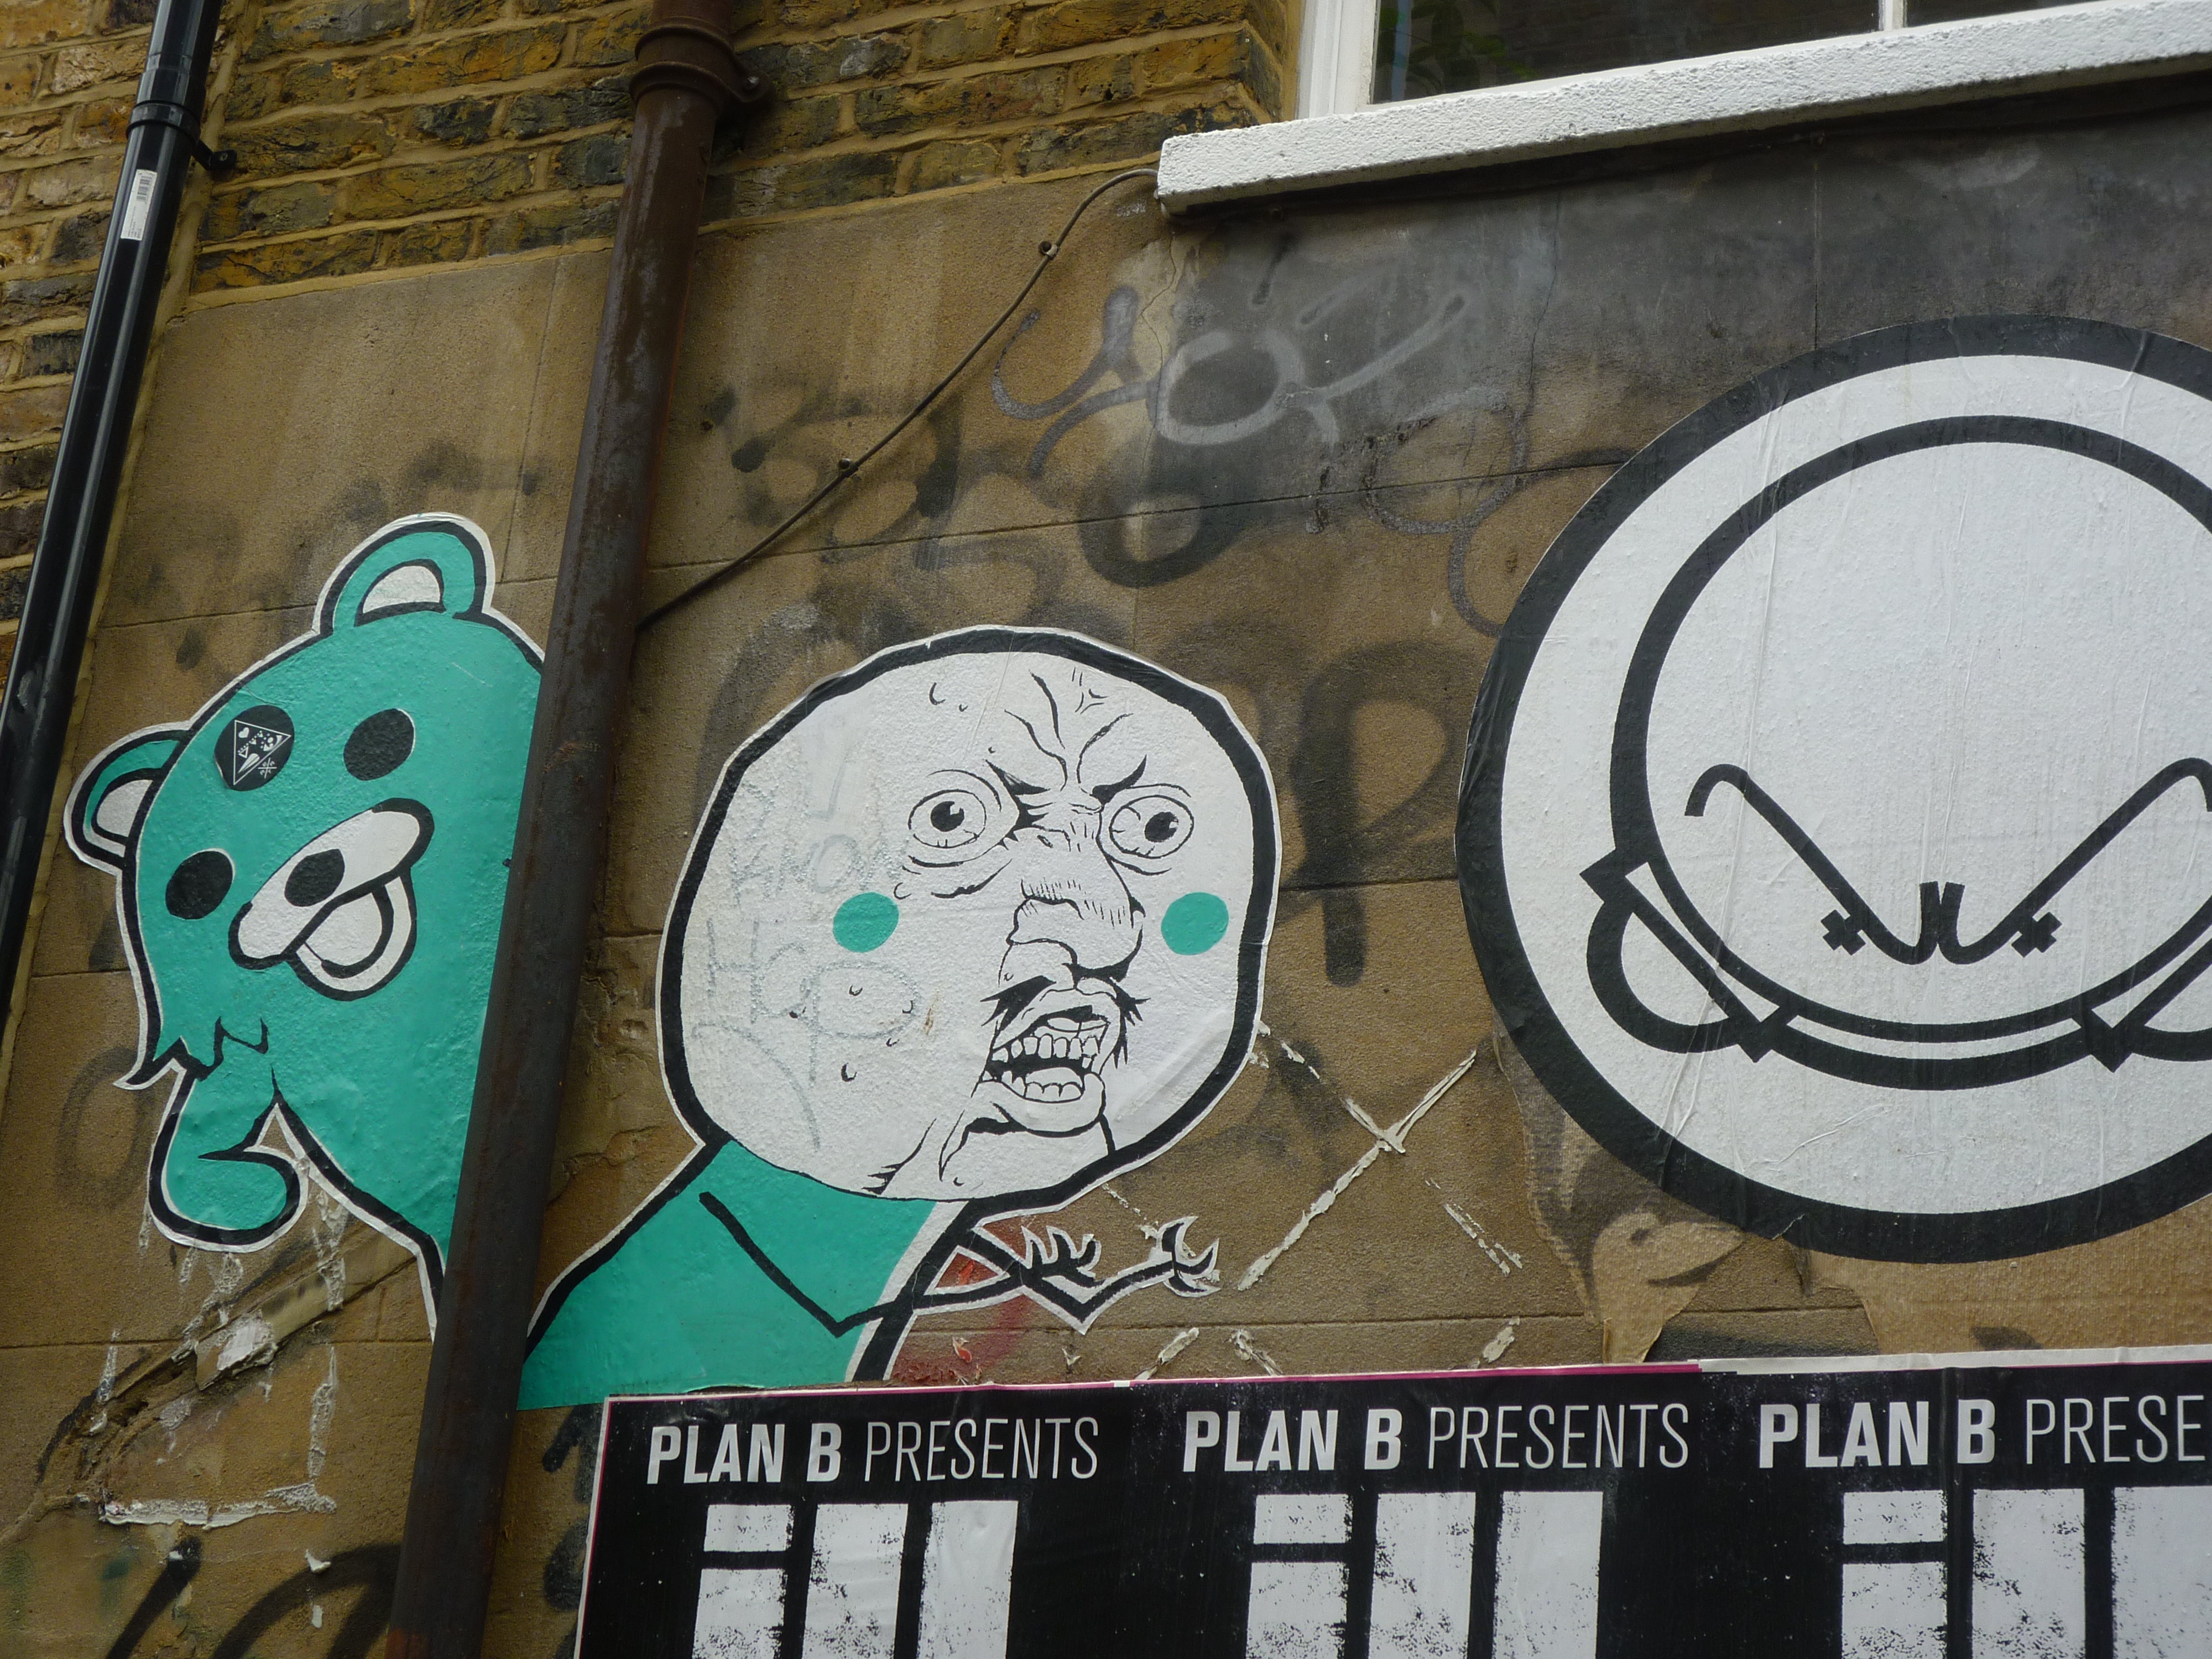 Street Art in London 2 - little bears everywhere